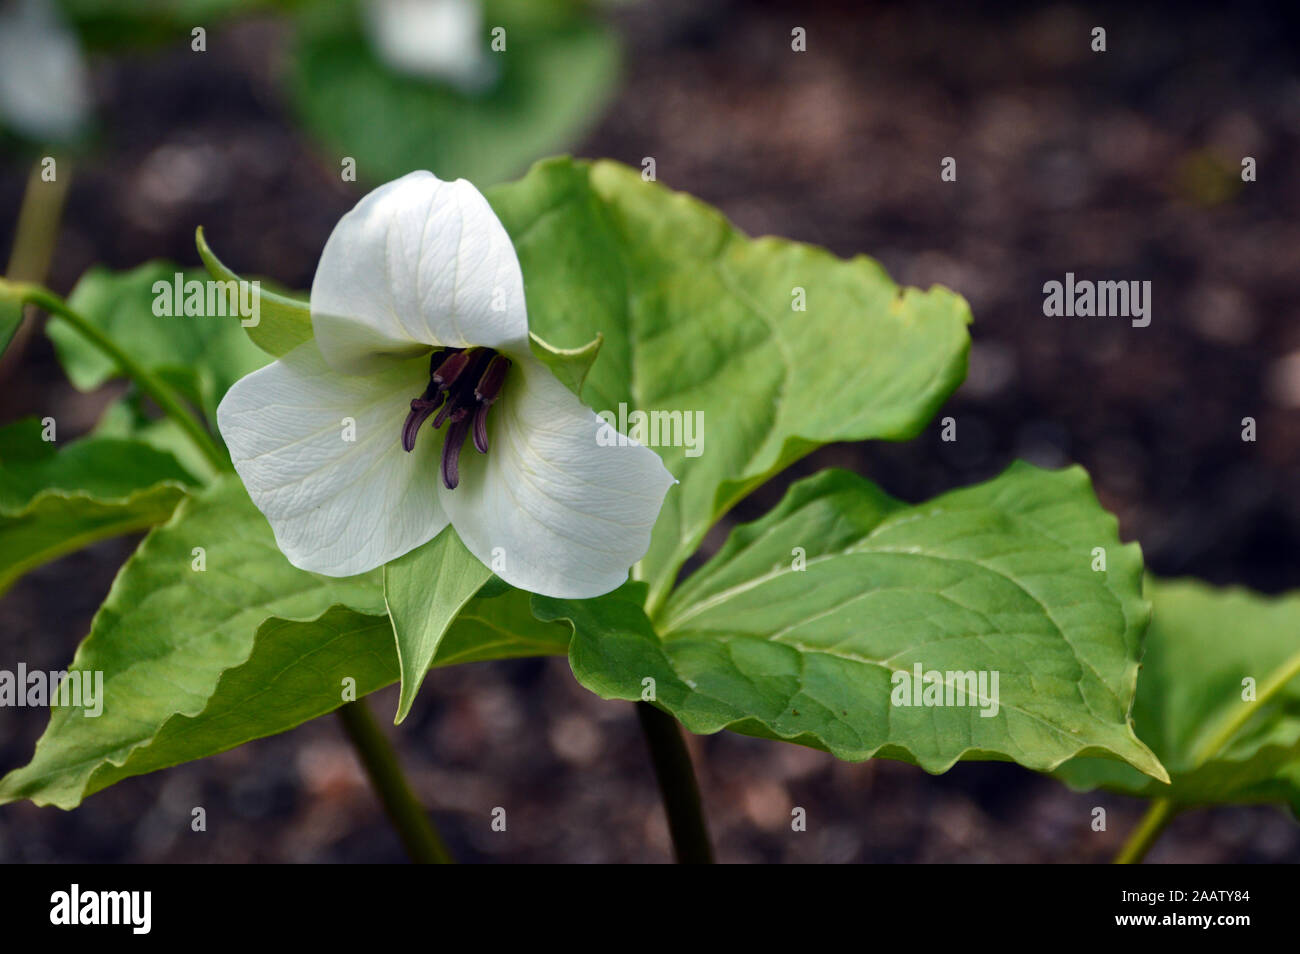 Le Livre blanc Service Robin (Trillium sourire) cultivés dans une frontière à RHS Garden Harlow Carr, Harrogate, Yorkshire. Angleterre, Royaume-Uni Banque D'Images